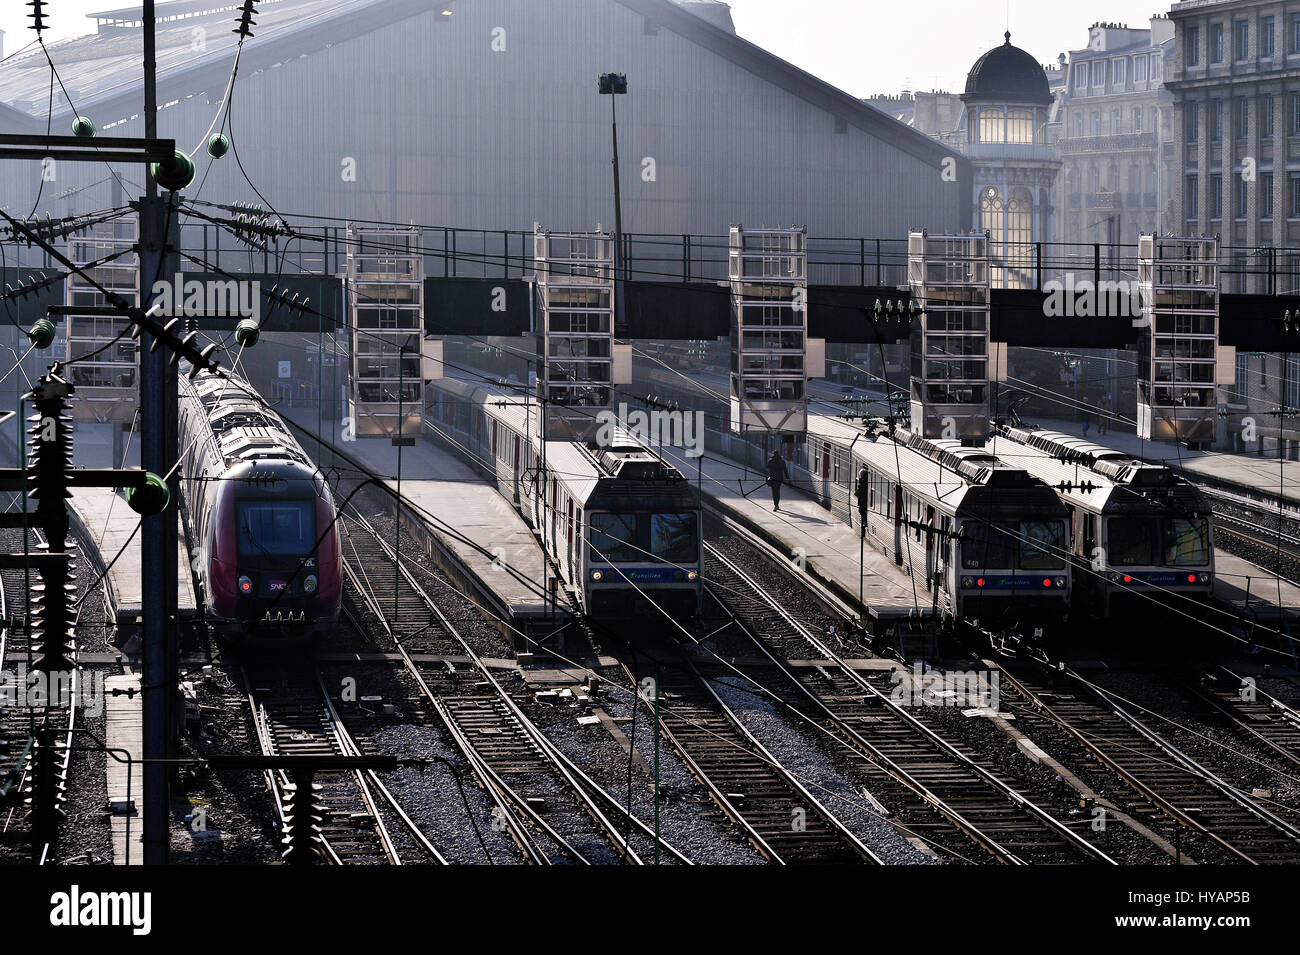 Centro ferroviario de la estación Gare du Nord, Paris, Francia Foto de stock